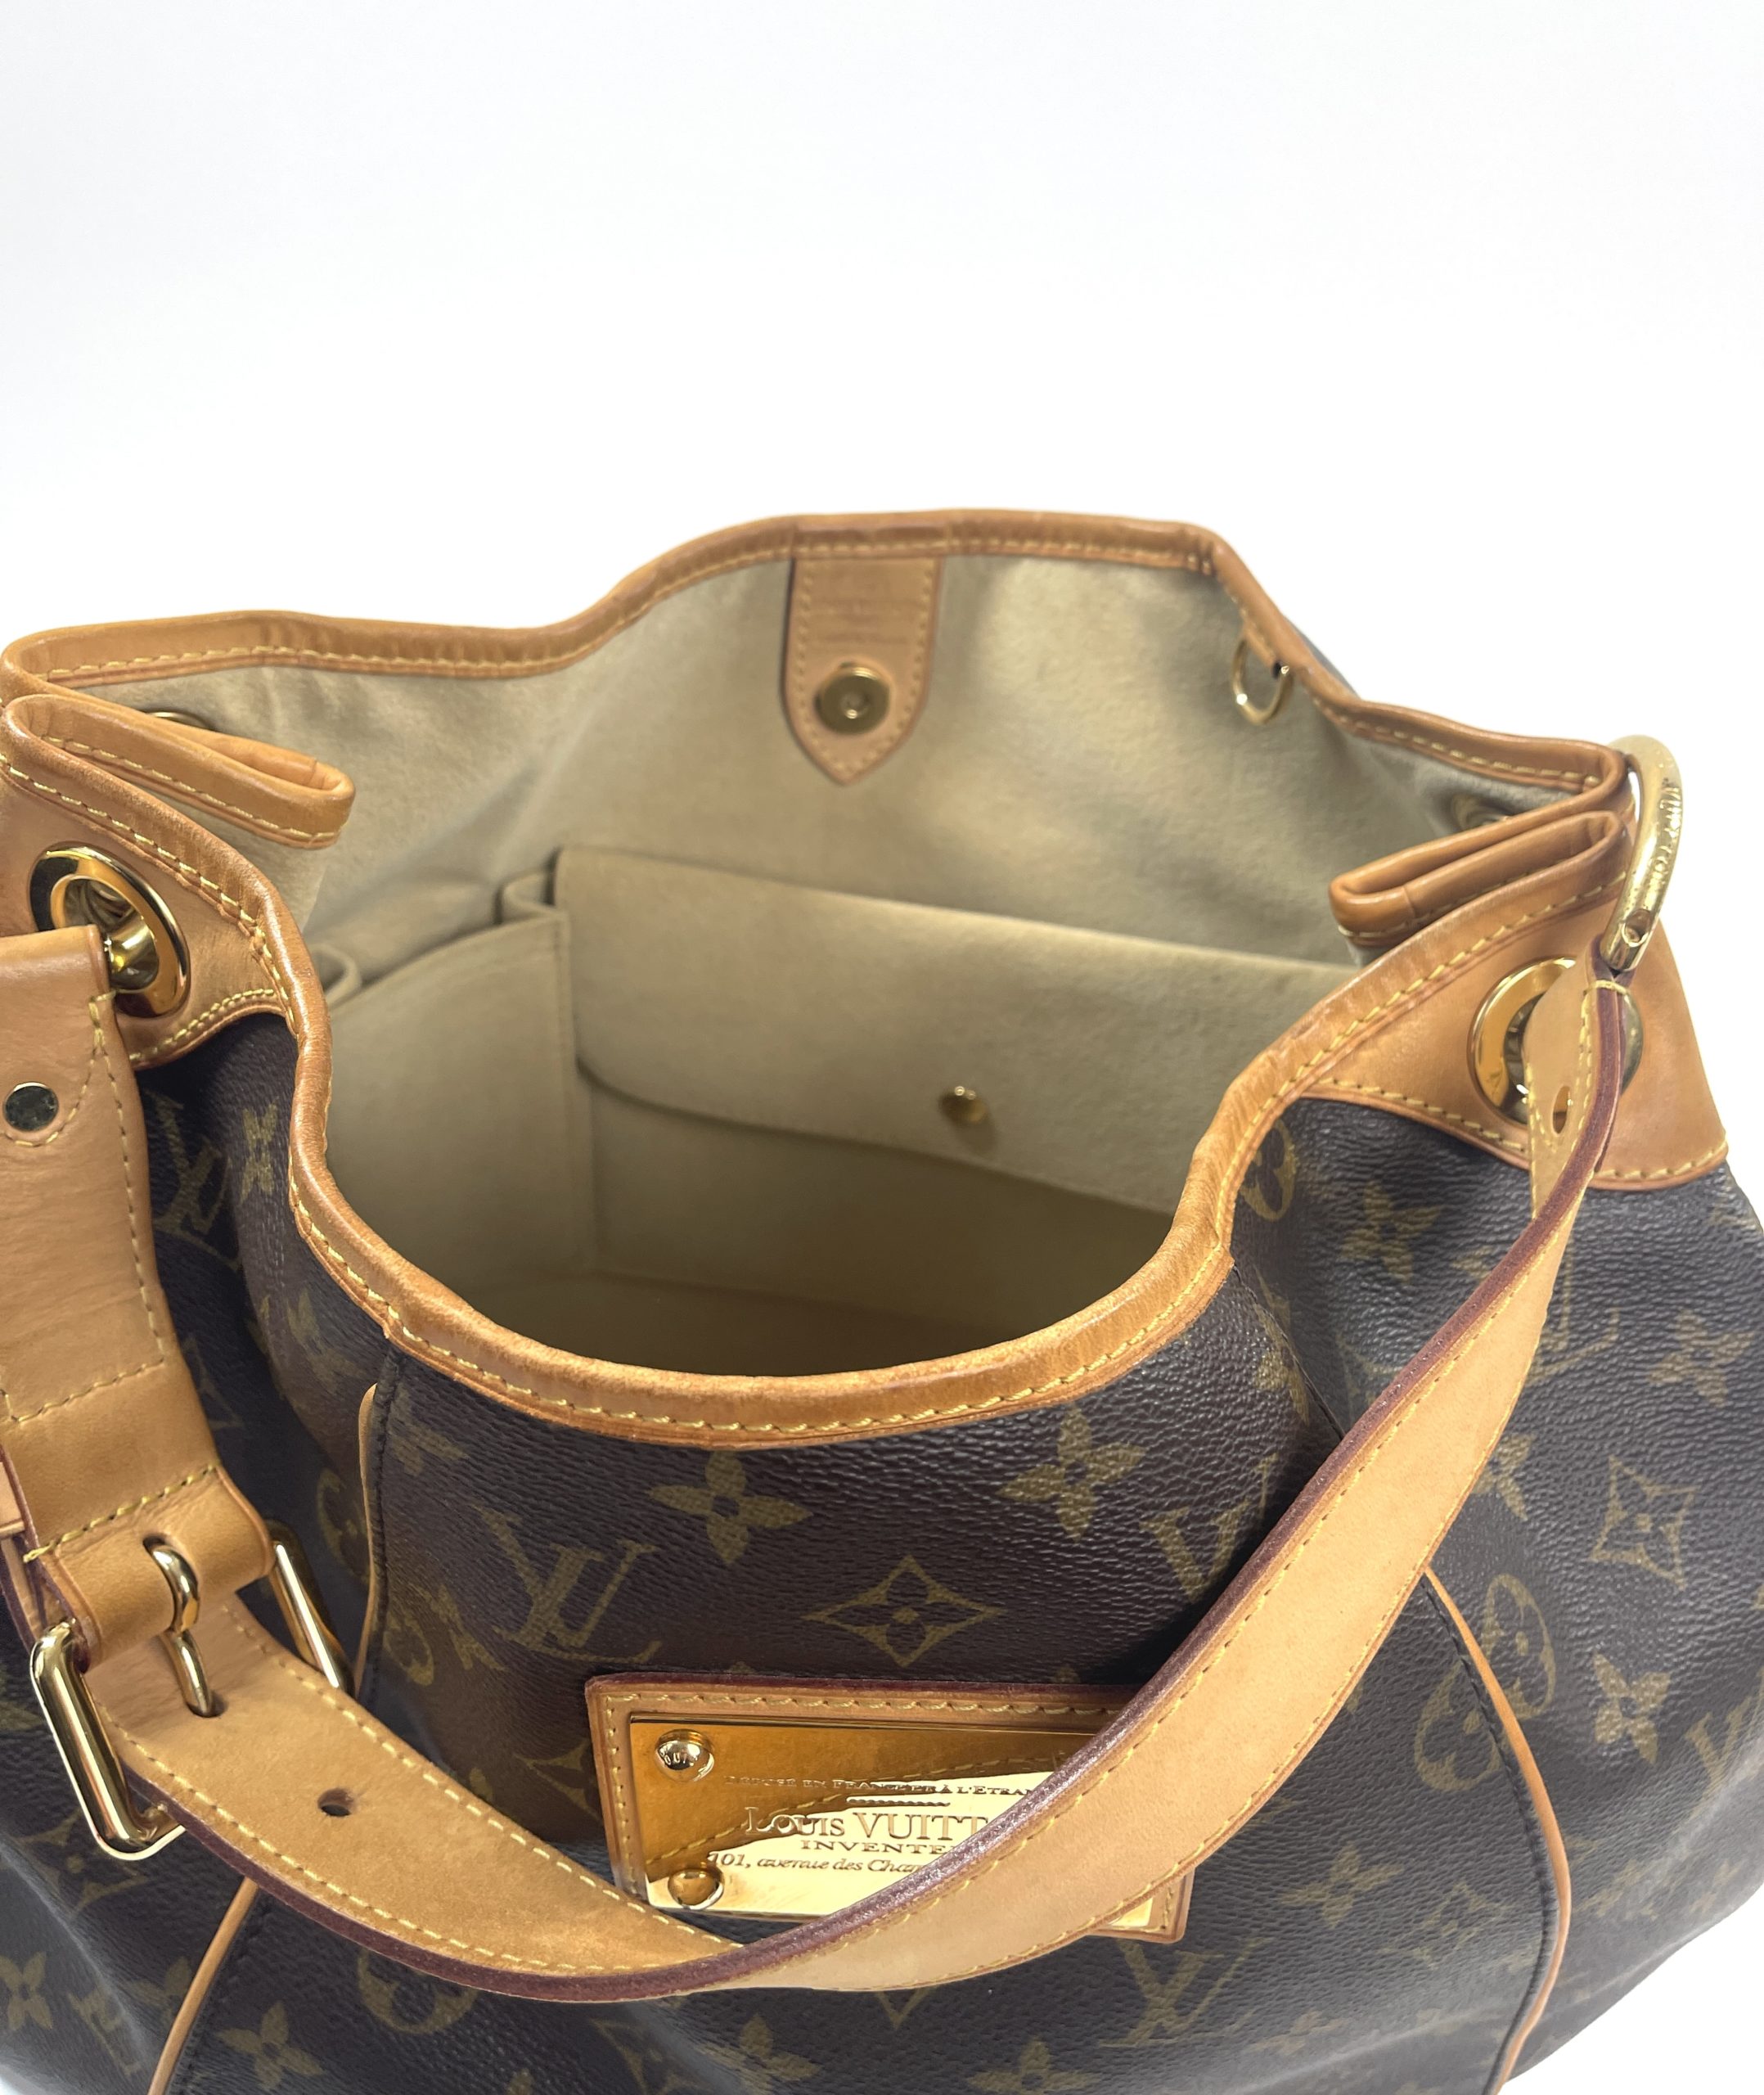 Louis Vuitton Damier Azur Galliera PM Tote Bag Multiple colors